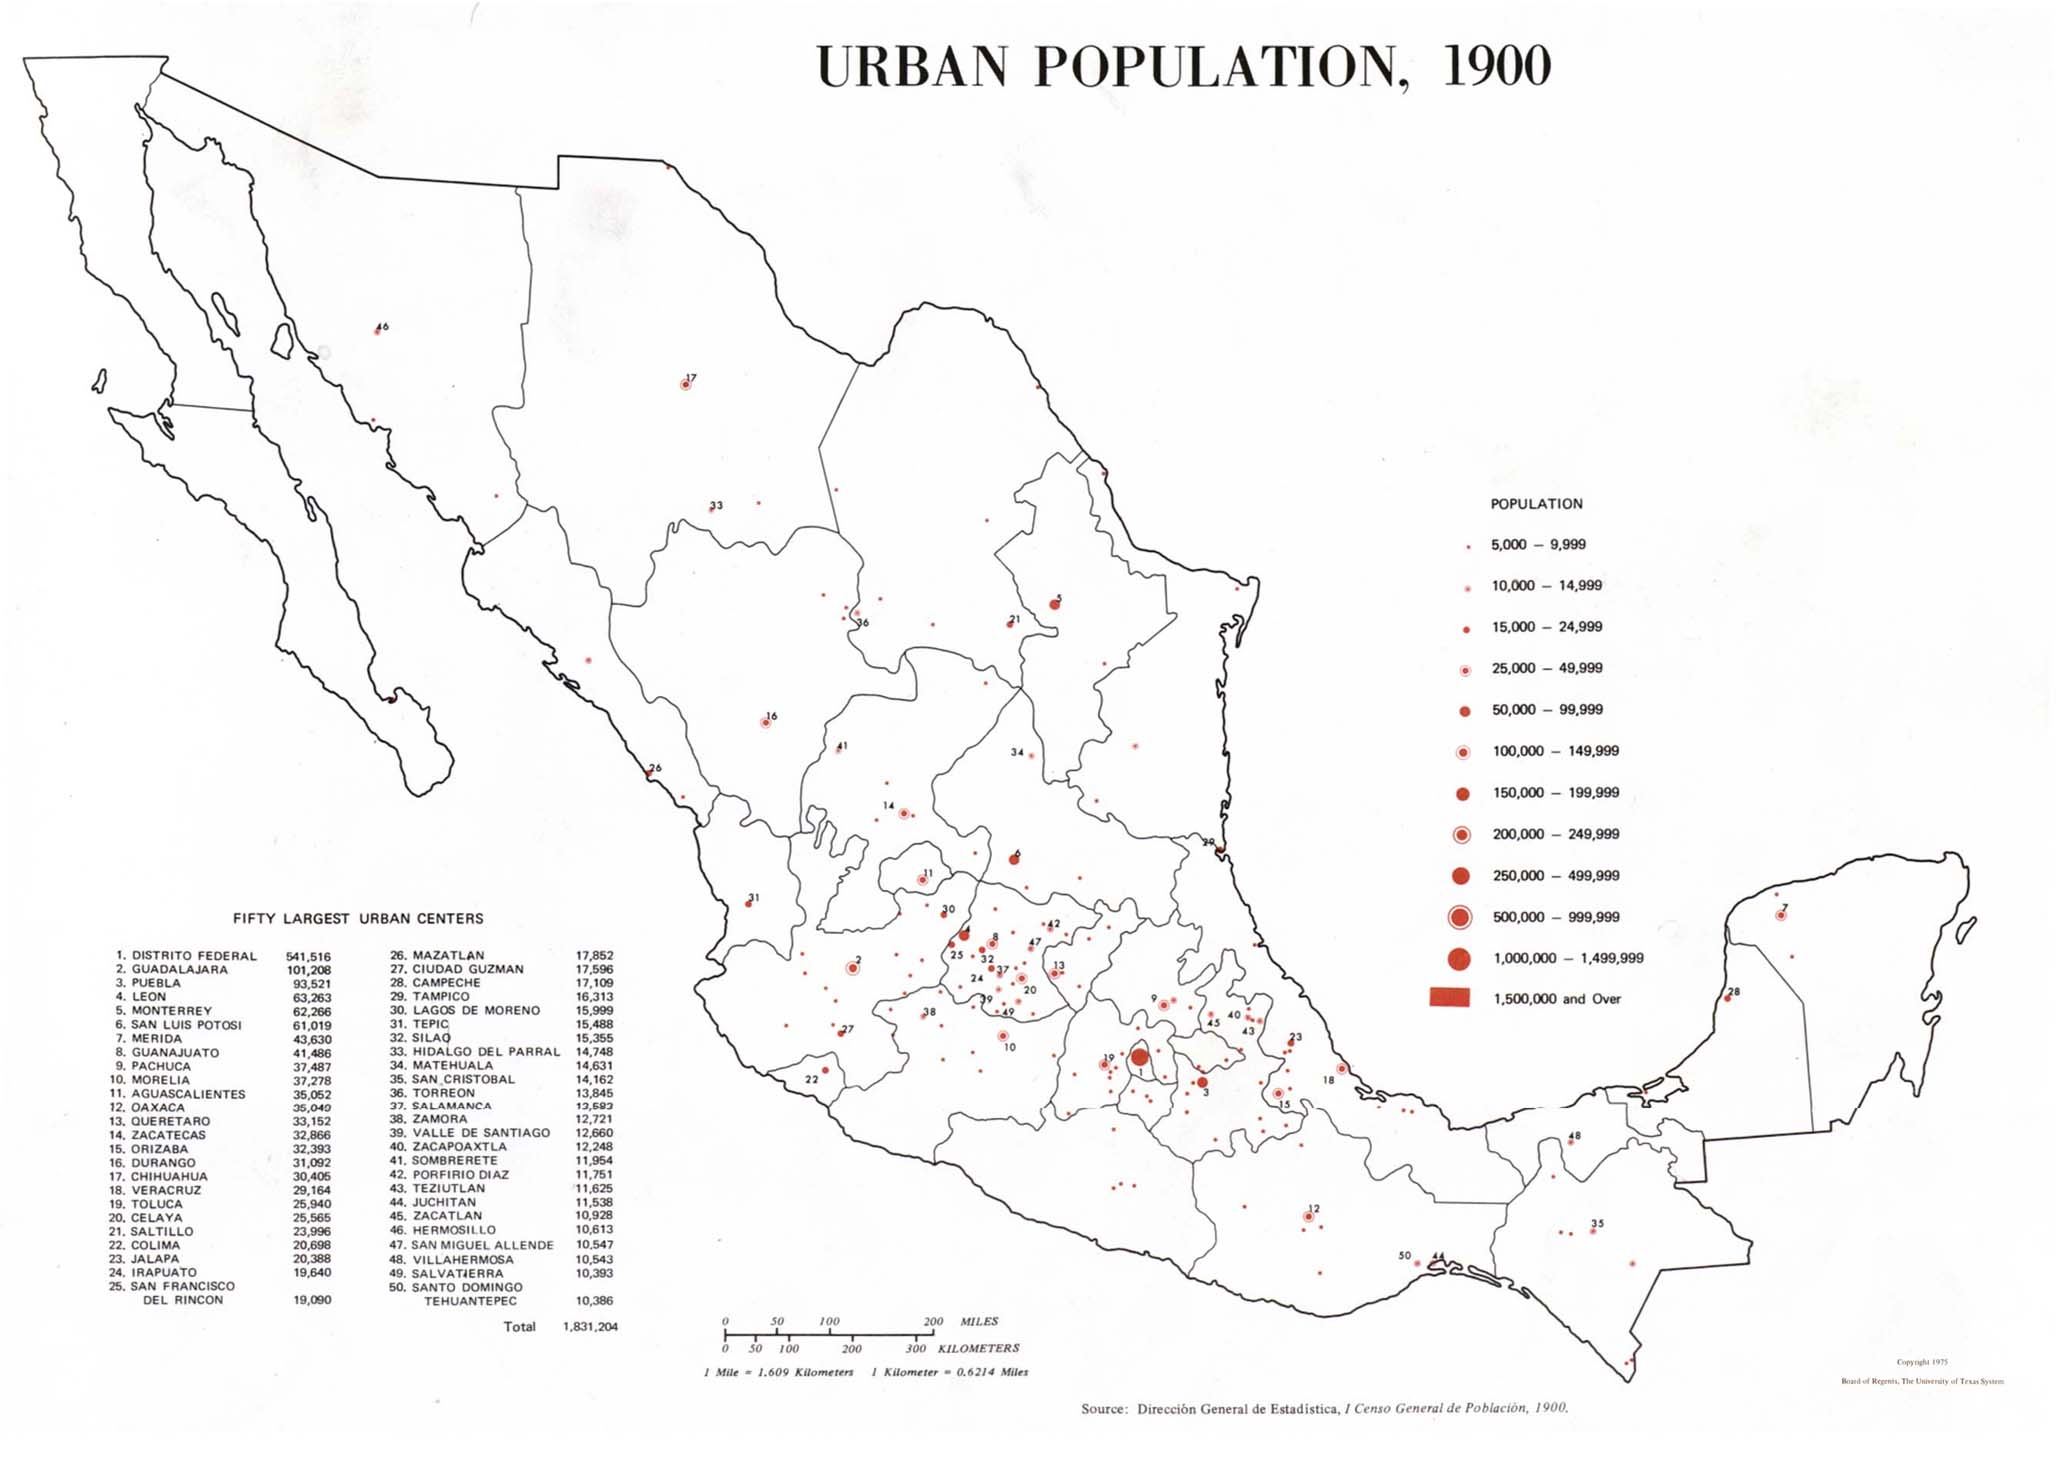 Mapa de Población Urbana de México 1900